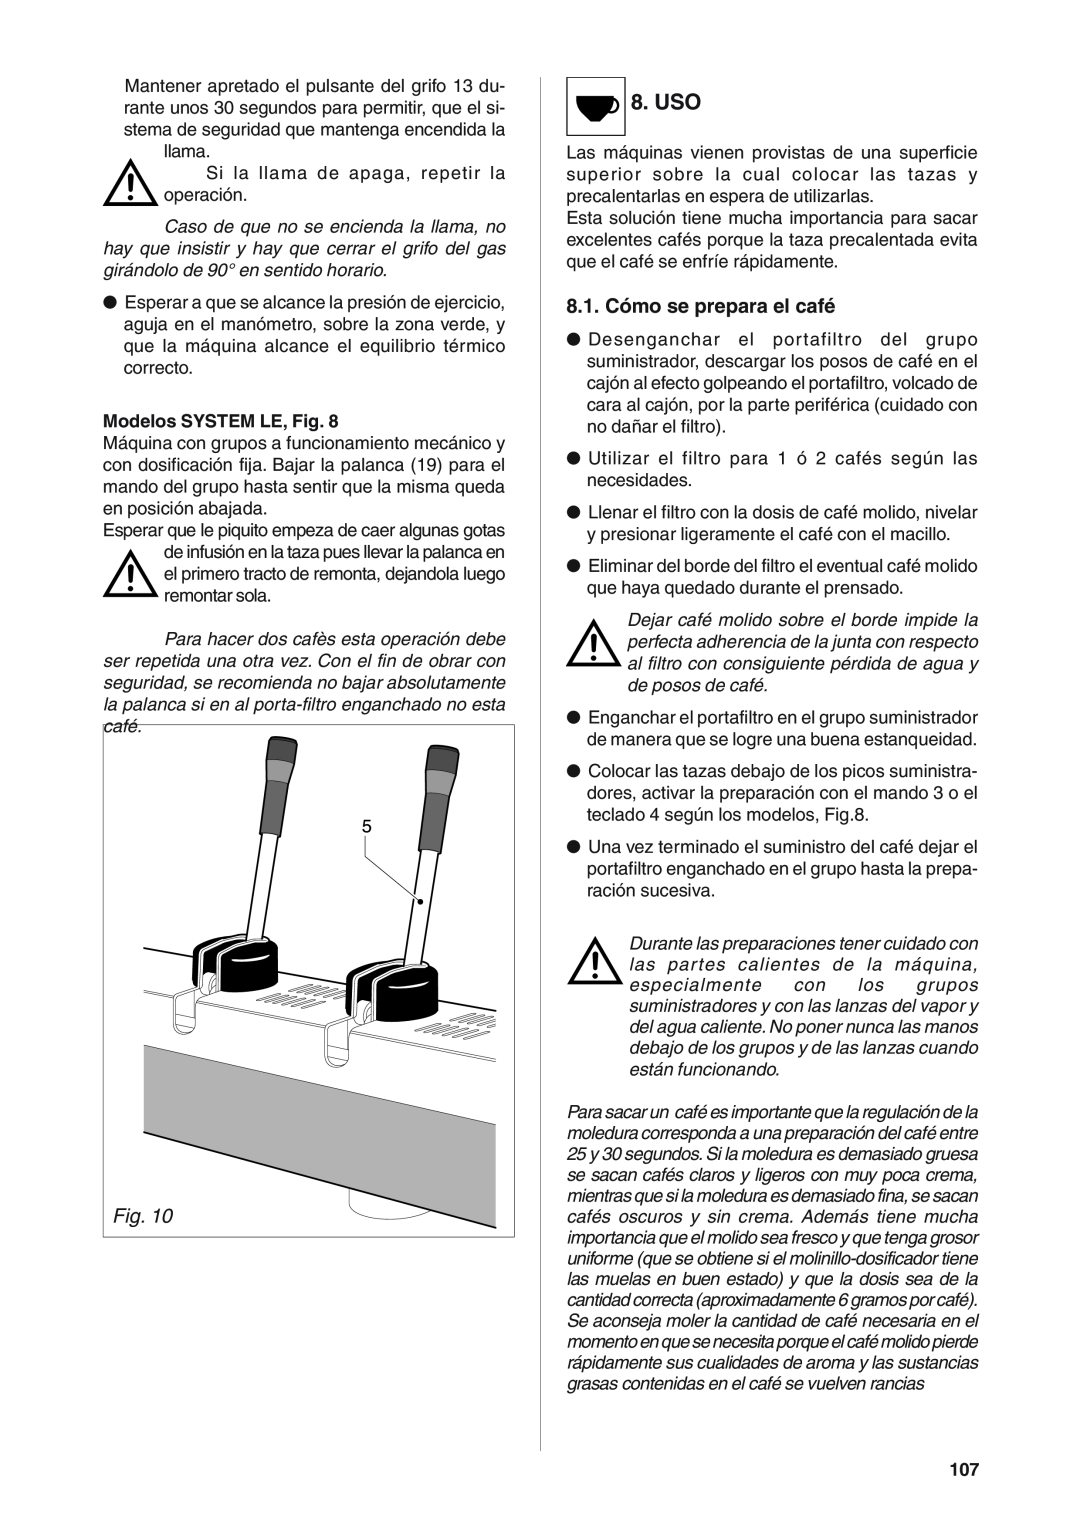 Rancilio S20 manual 8.1. Cómo se prepara el café, Uso, Modelos SYSTEM LE, Fig 